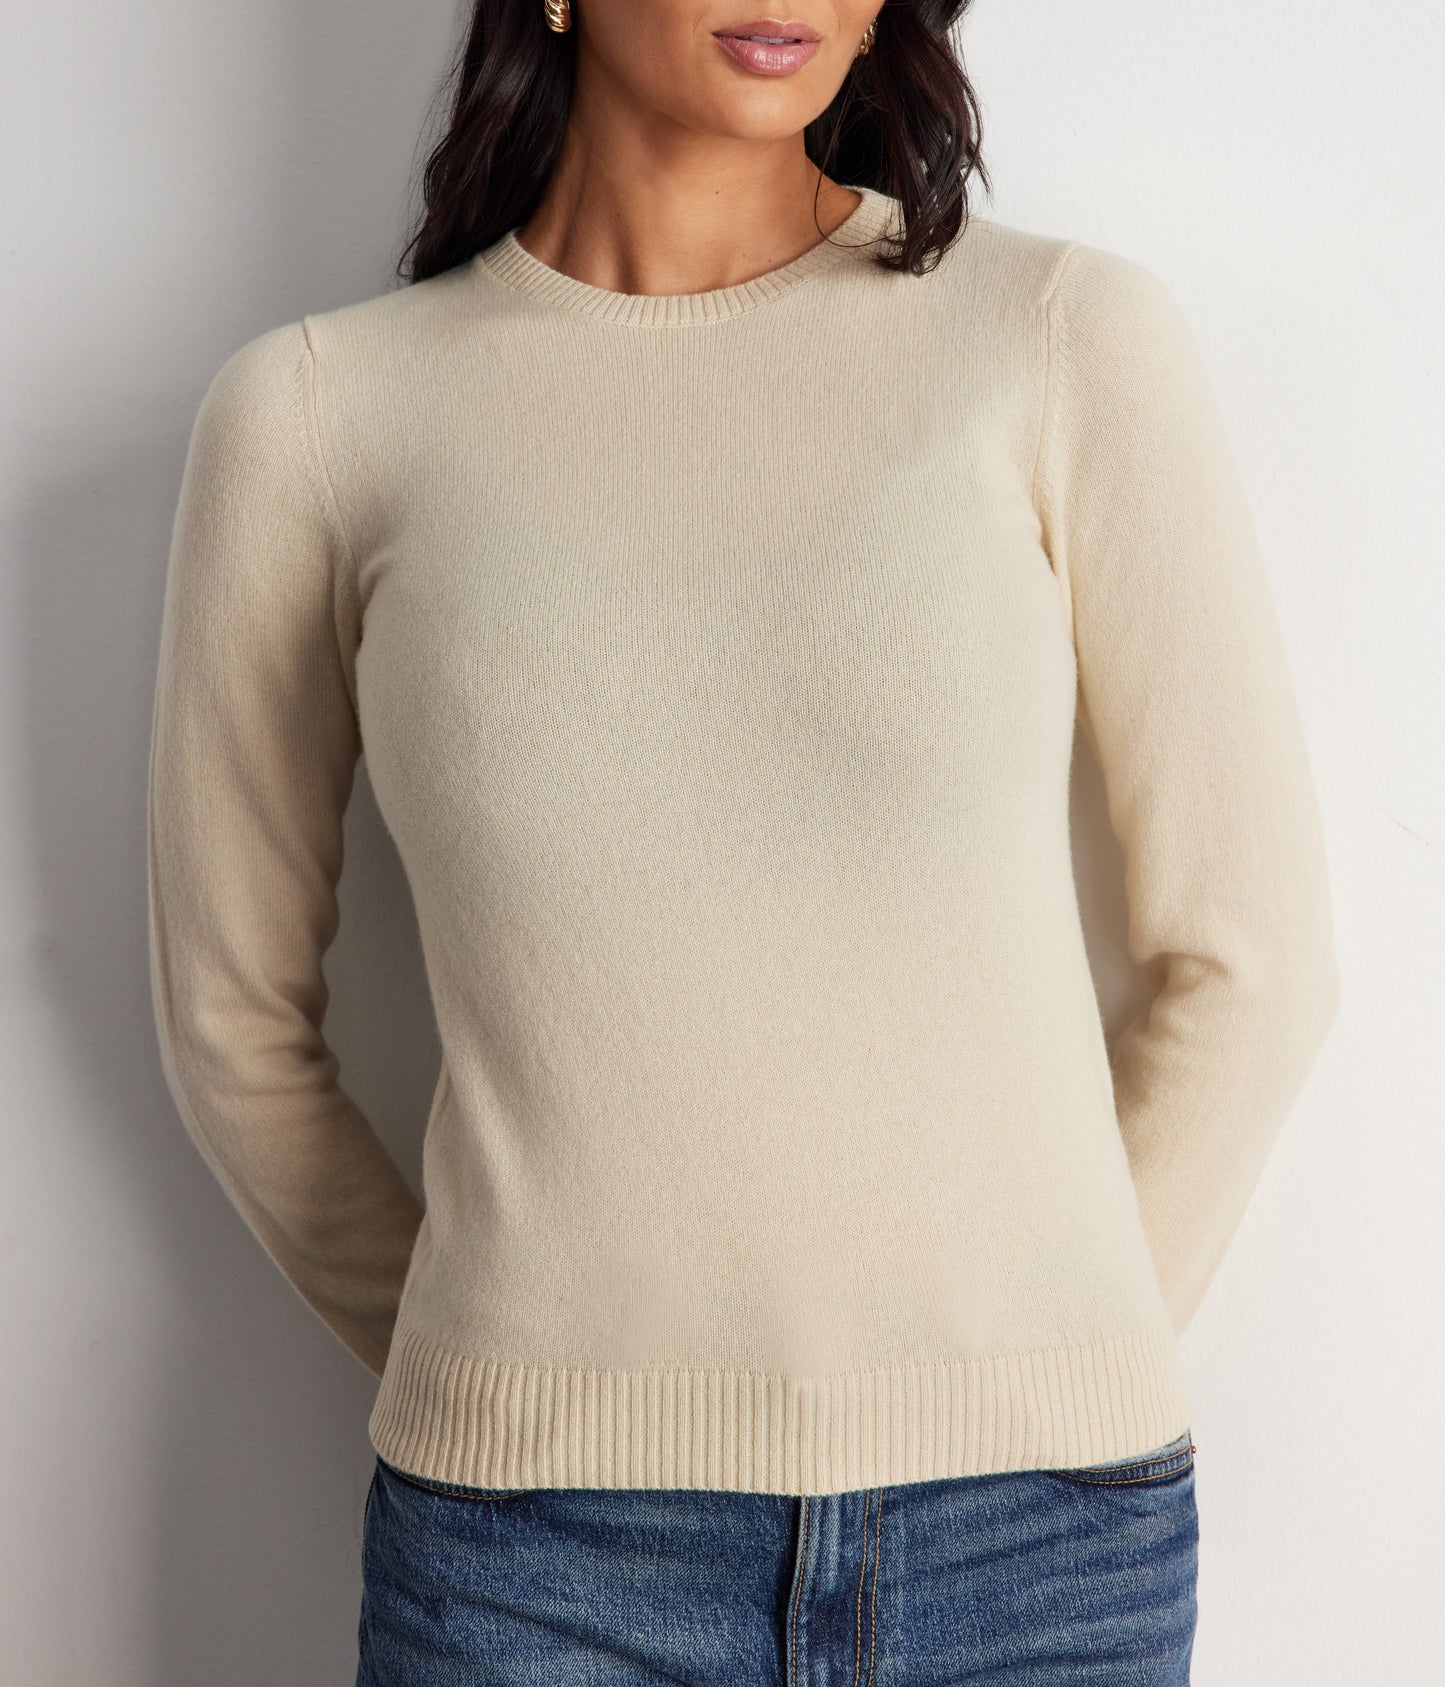 100% Cashmere Sweater - Winter White